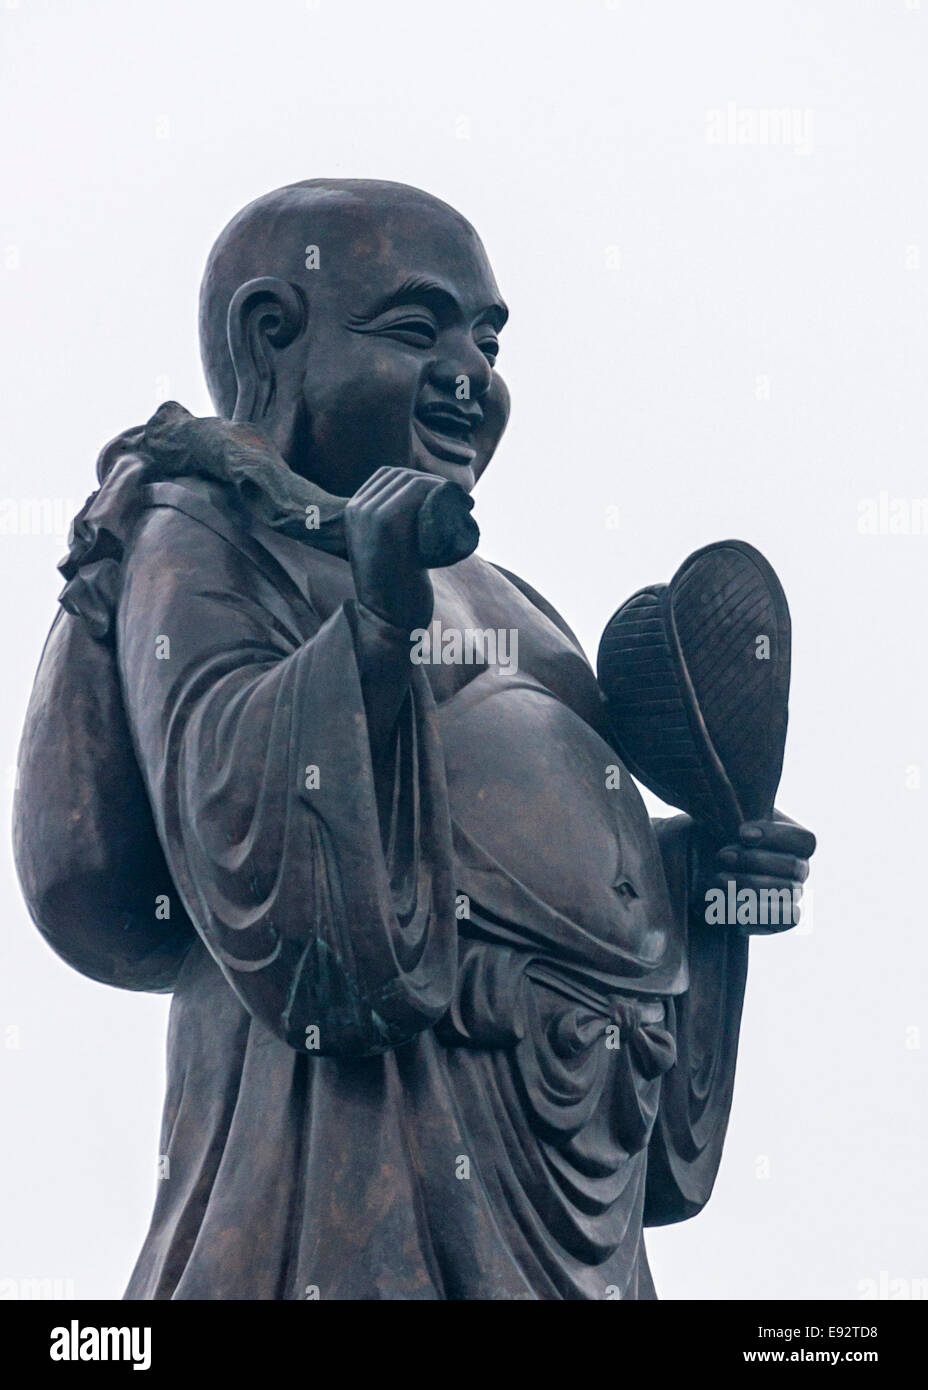 36 Ton granite statue of happy wandering Buddha. Stock Photo